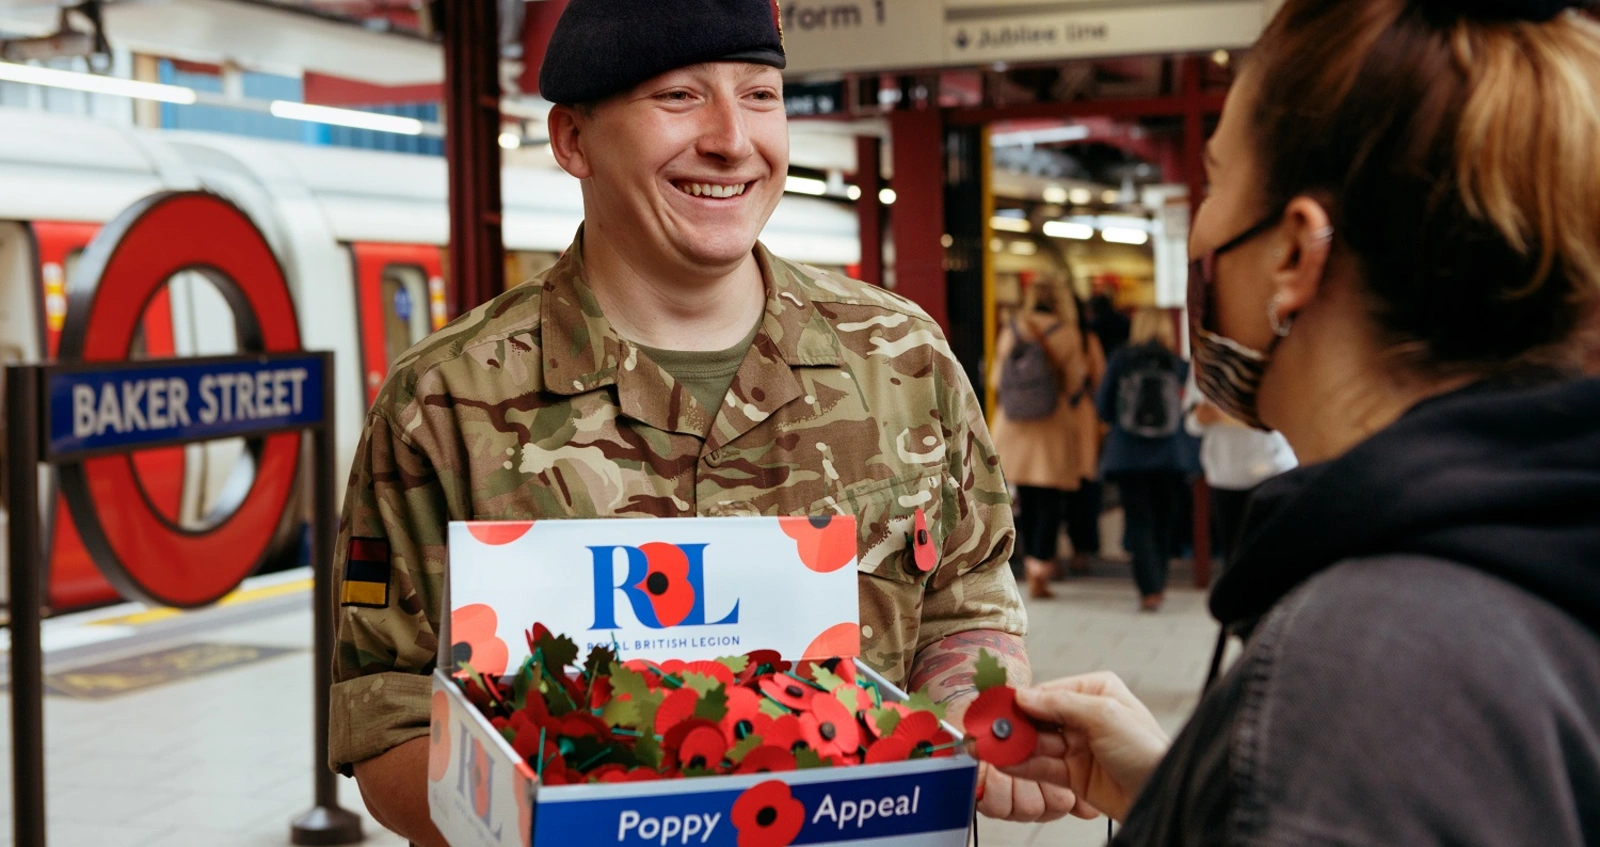 Londoni máknap | Poppy Appeal | Brit Királyi Légió